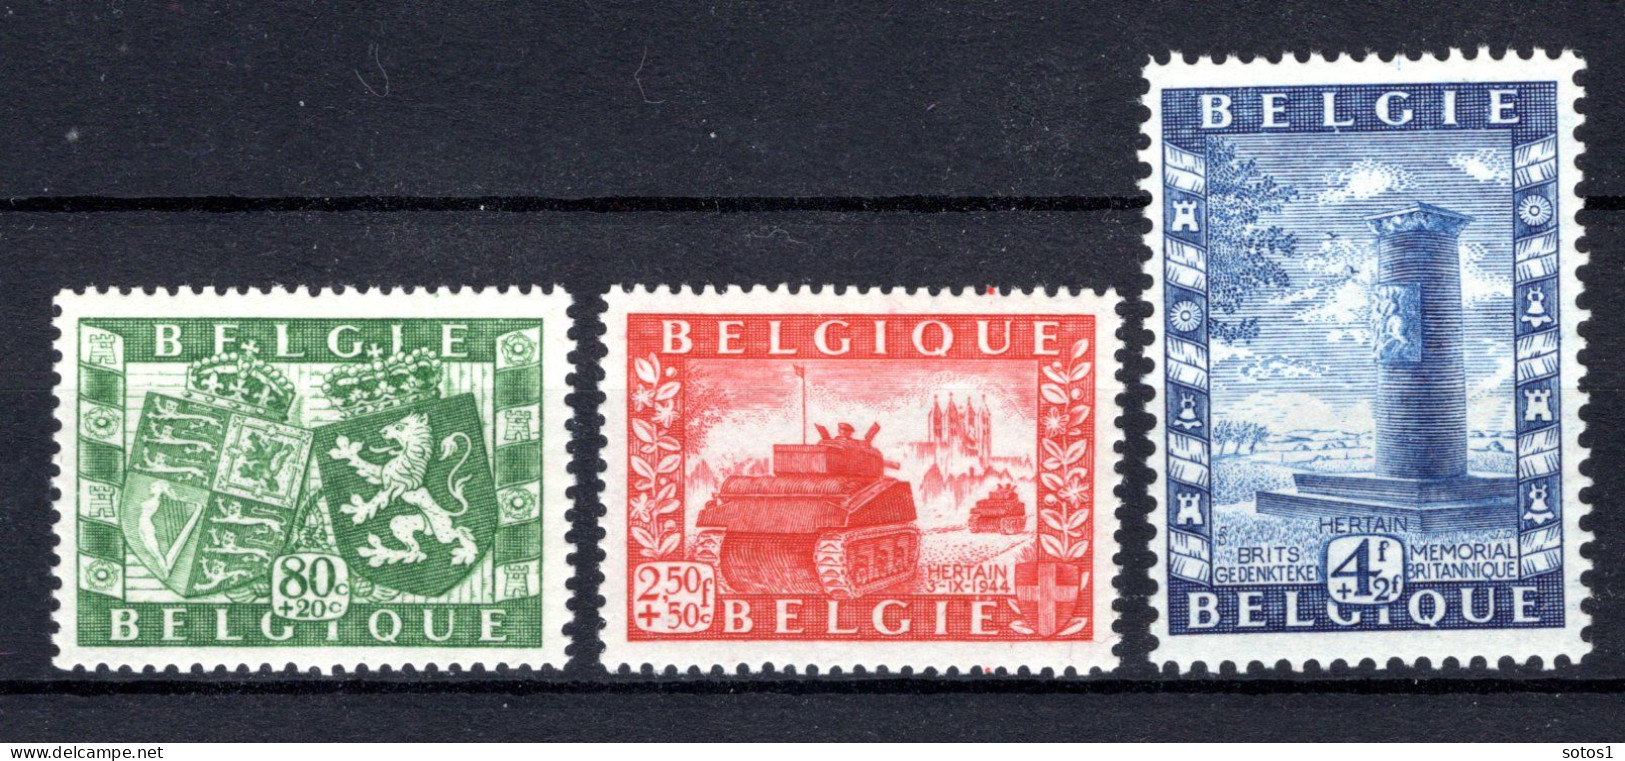 823/825 MNH 1950 - Genootschap België - Groot-Brittannië. - Unused Stamps